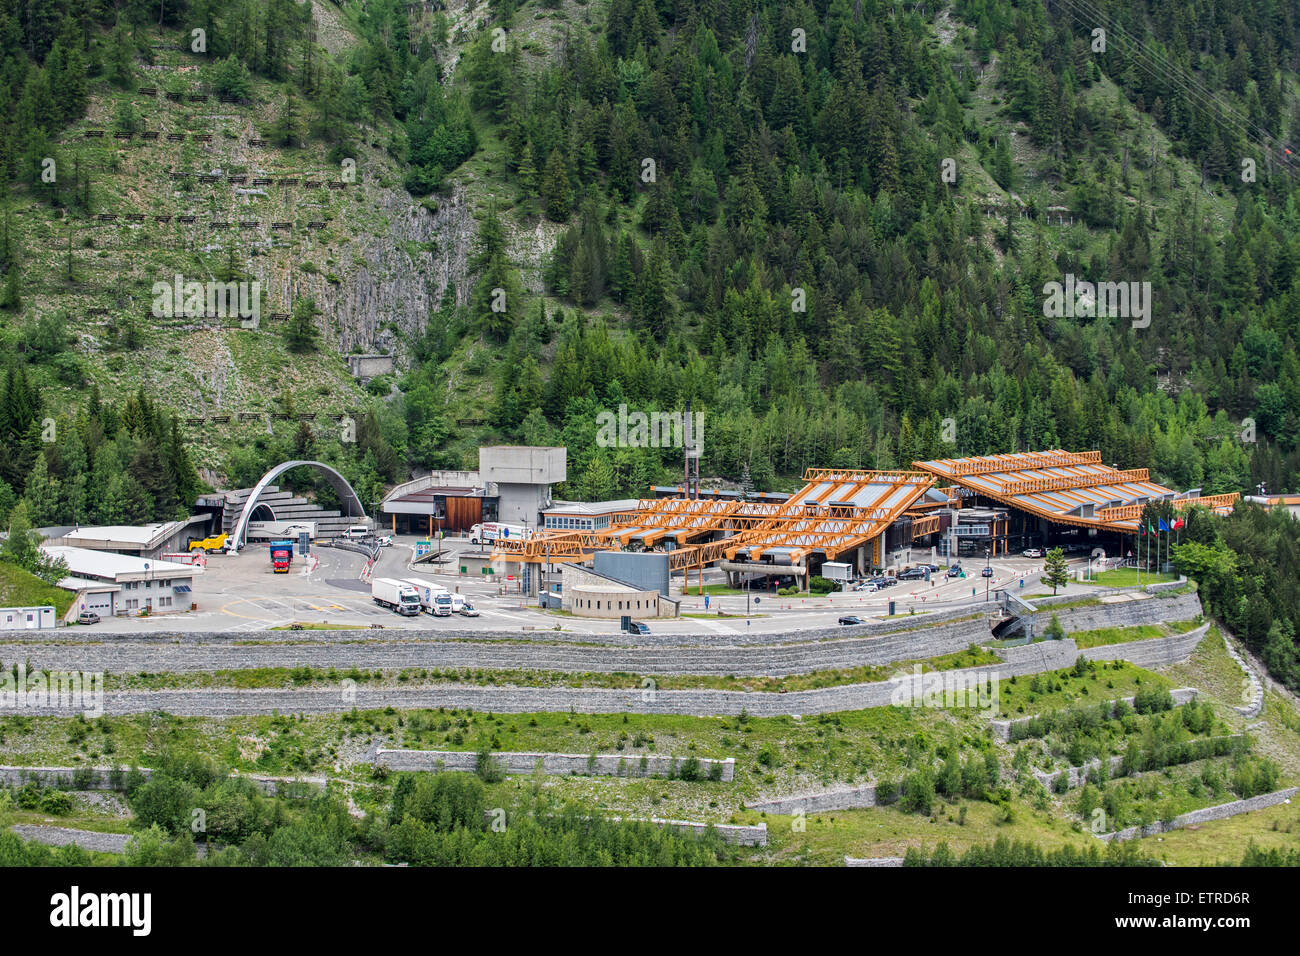 L'Italien entrée du tunnel du Mont Blanc dans les Alpes reliant Chamonix, Haute-Savoie, France avec Courmayeur, vallée d'aoste, Italie Banque D'Images